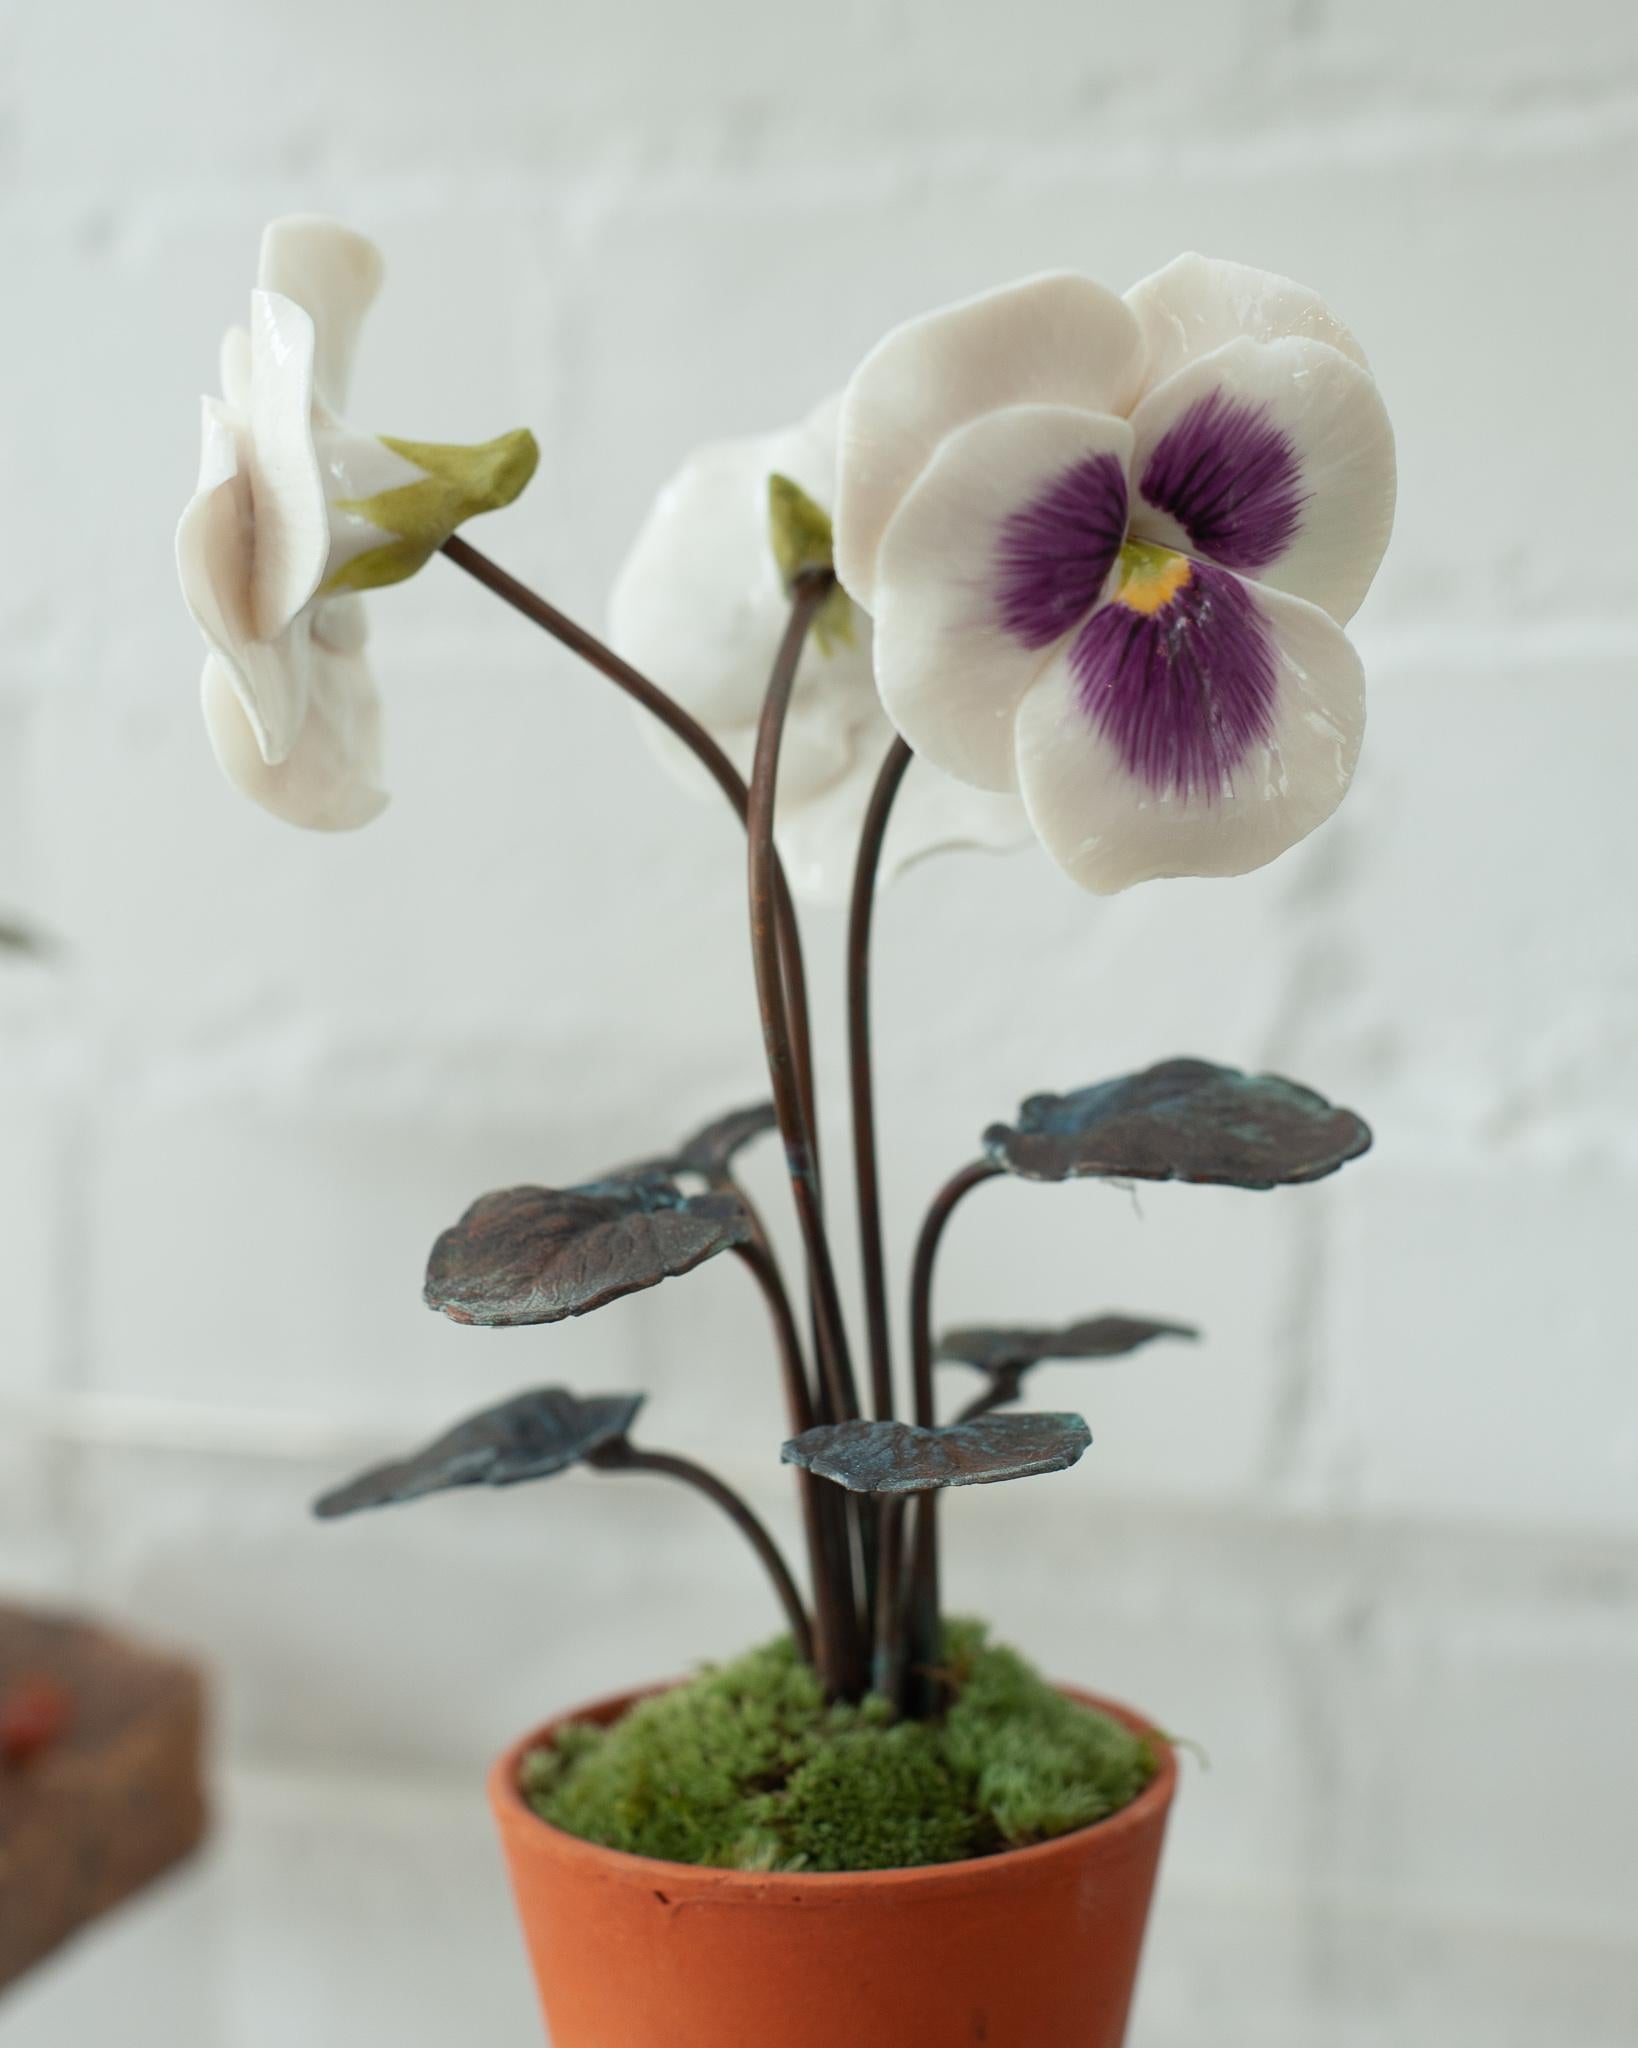 Verschönern Sie Ihren Tisch mit diesen zarten Porzellanblumen des französischen Künstlers Samuel Mazy, exklusiv bei Maison Nurita in Kanada. Mazy ist seit fast 20 Jahren als Keramikerin in Paris tätig. Er modelliert Porzellanblumen zu poetischen